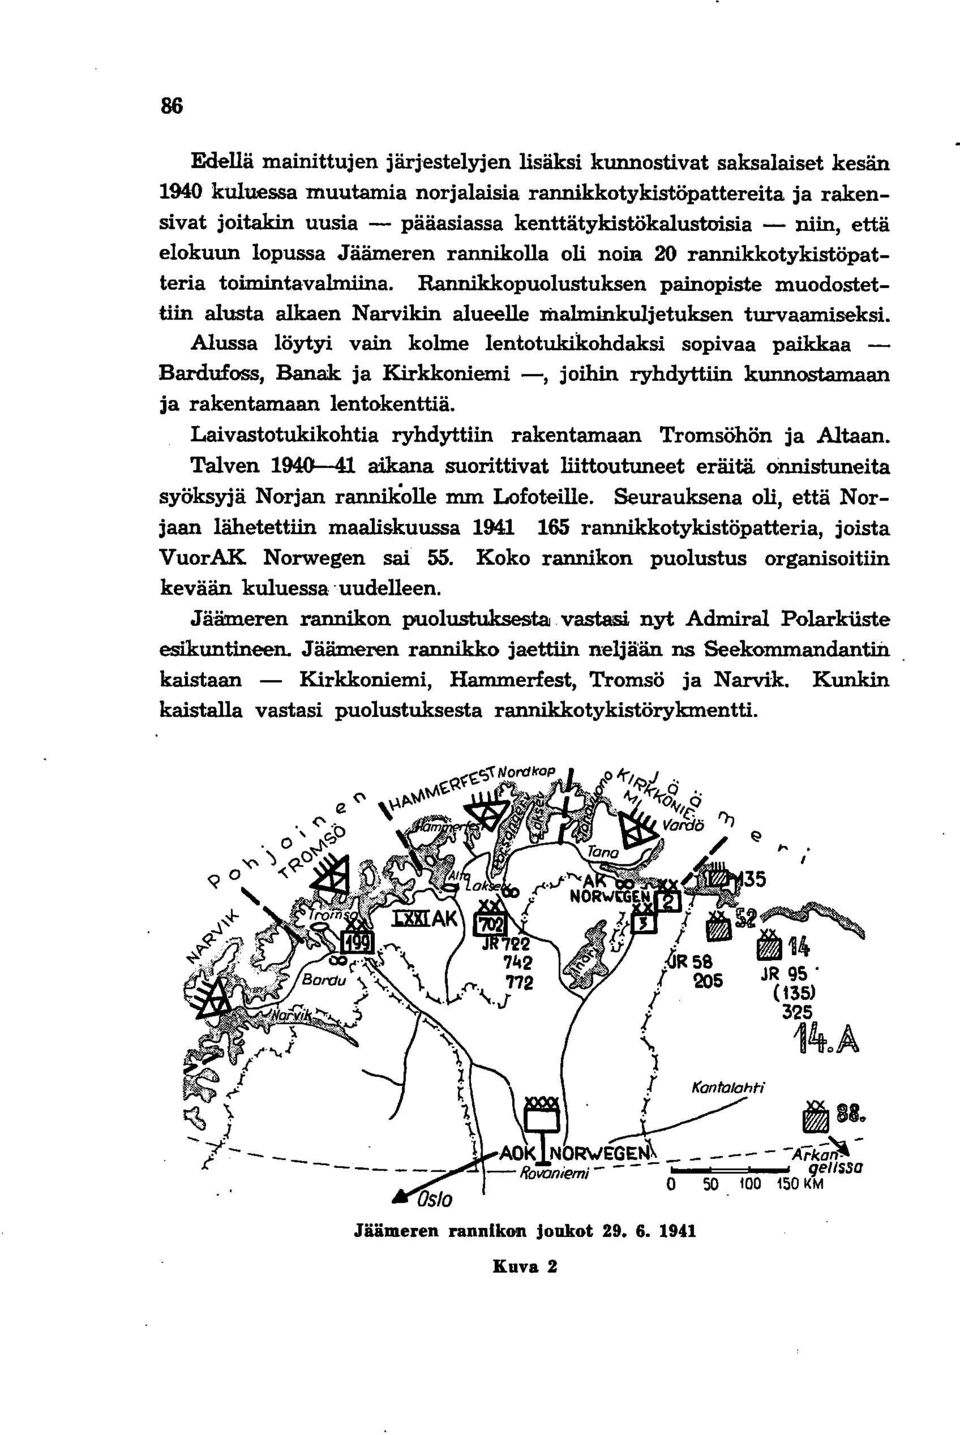 Rannikkopuolustuksen painopiste muodostettiin alusta alkaen Narvikin alueelle malminkuljetuksen turvaamiseksi.